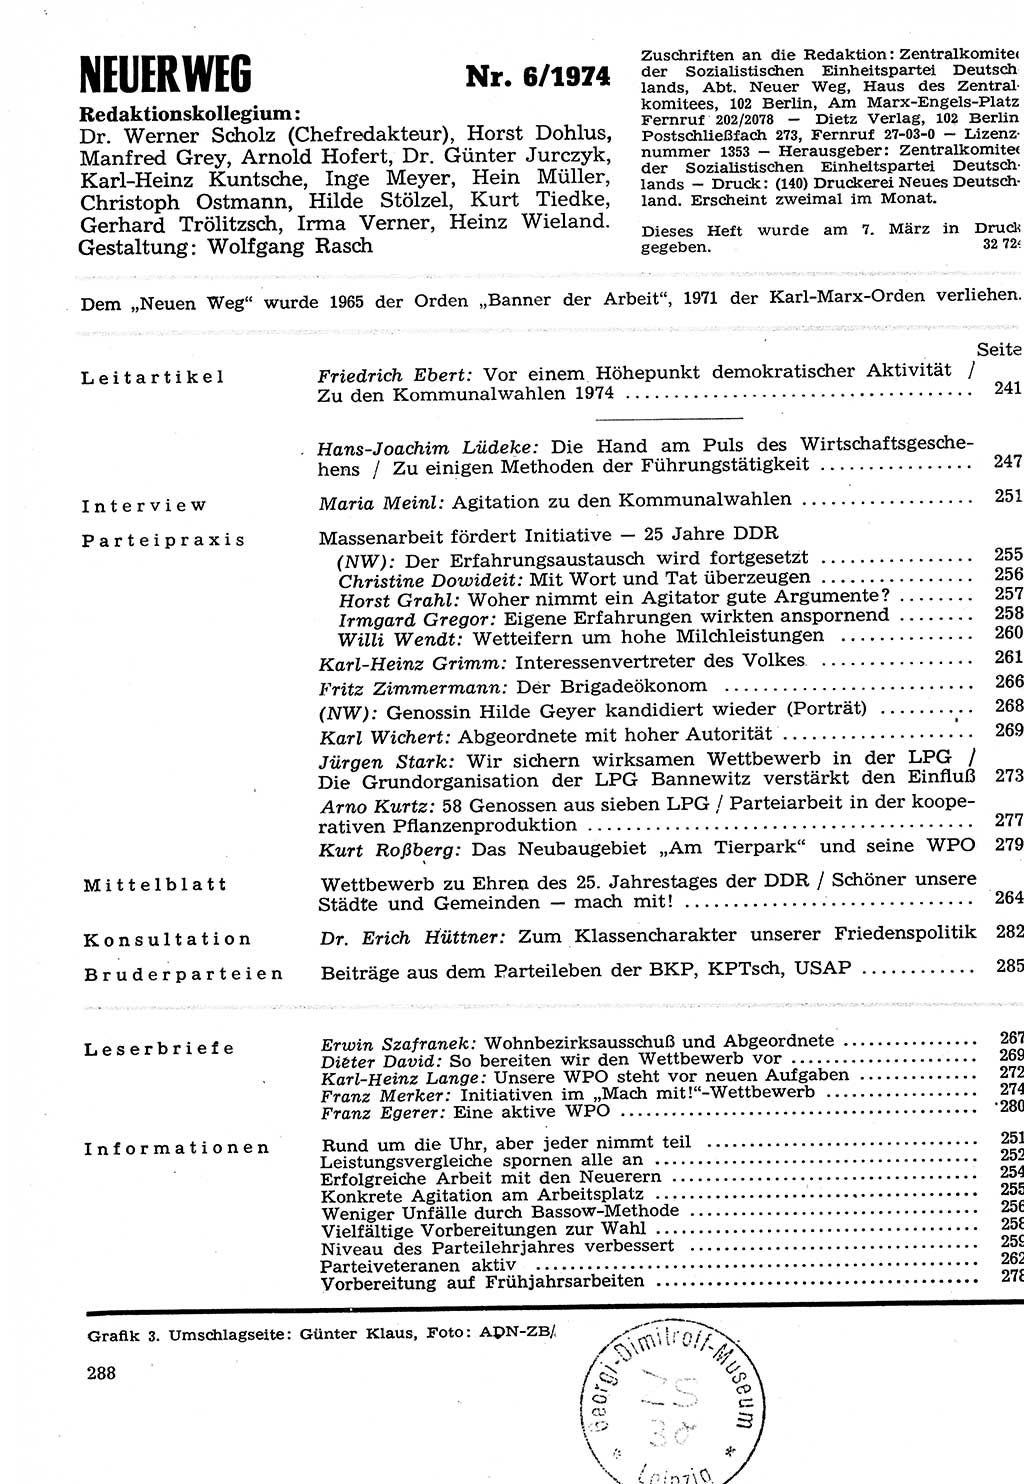 Neuer Weg (NW), Organ des Zentralkomitees (ZK) der SED (Sozialistische Einheitspartei Deutschlands) für Fragen des Parteilebens, 29. Jahrgang [Deutsche Demokratische Republik (DDR)] 1974, Seite 288 (NW ZK SED DDR 1974, S. 288)